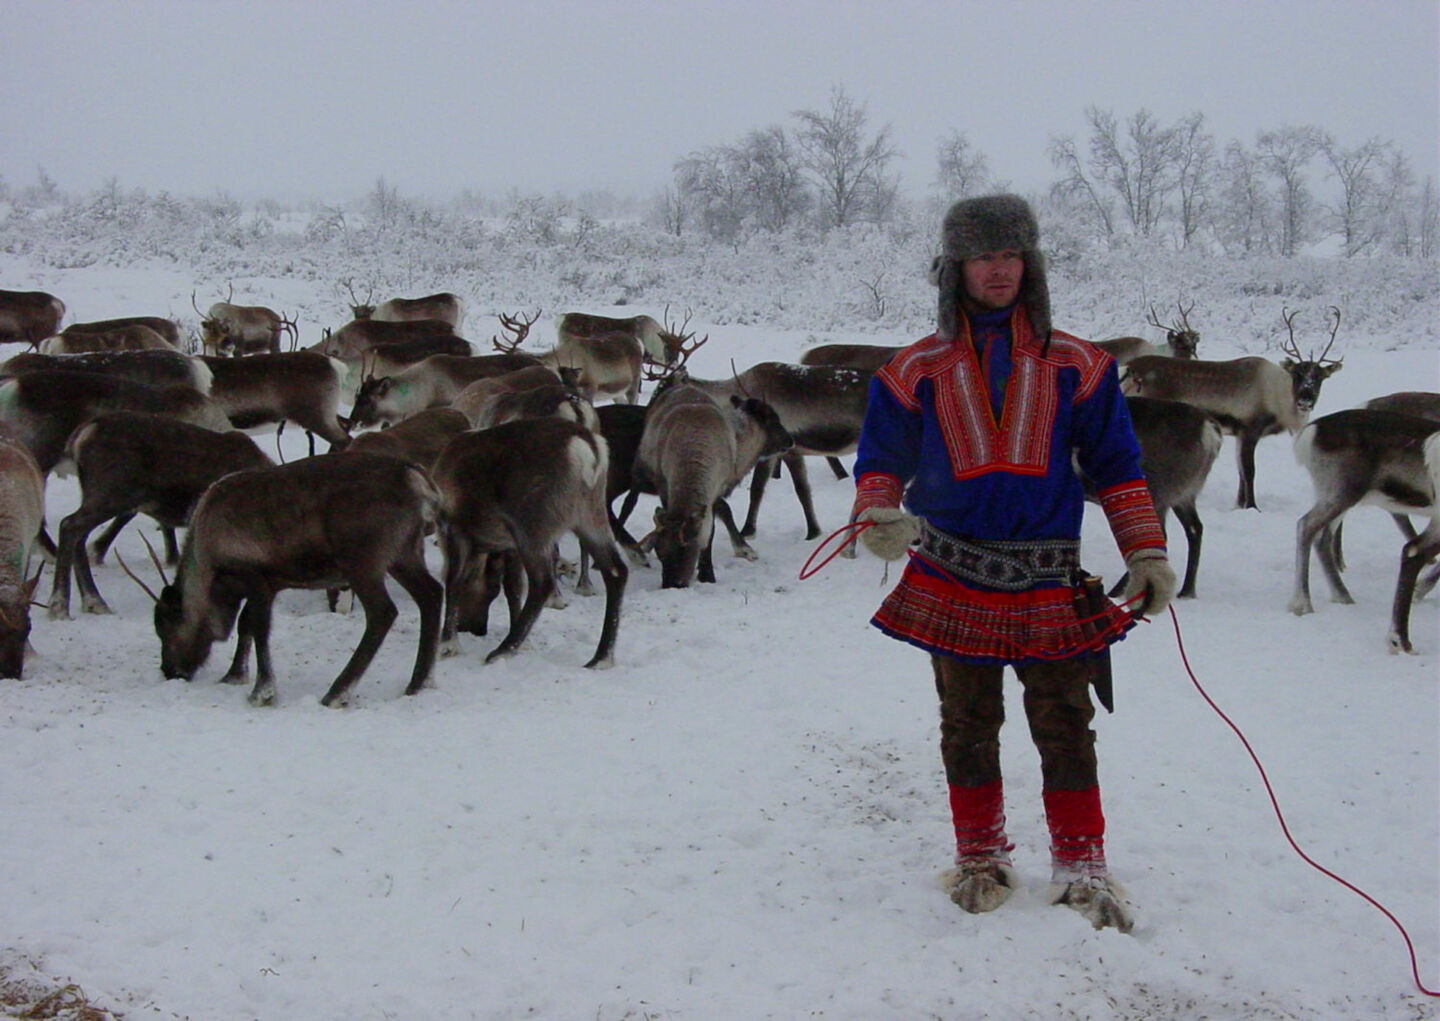 A Sámi reindeer herder in winter